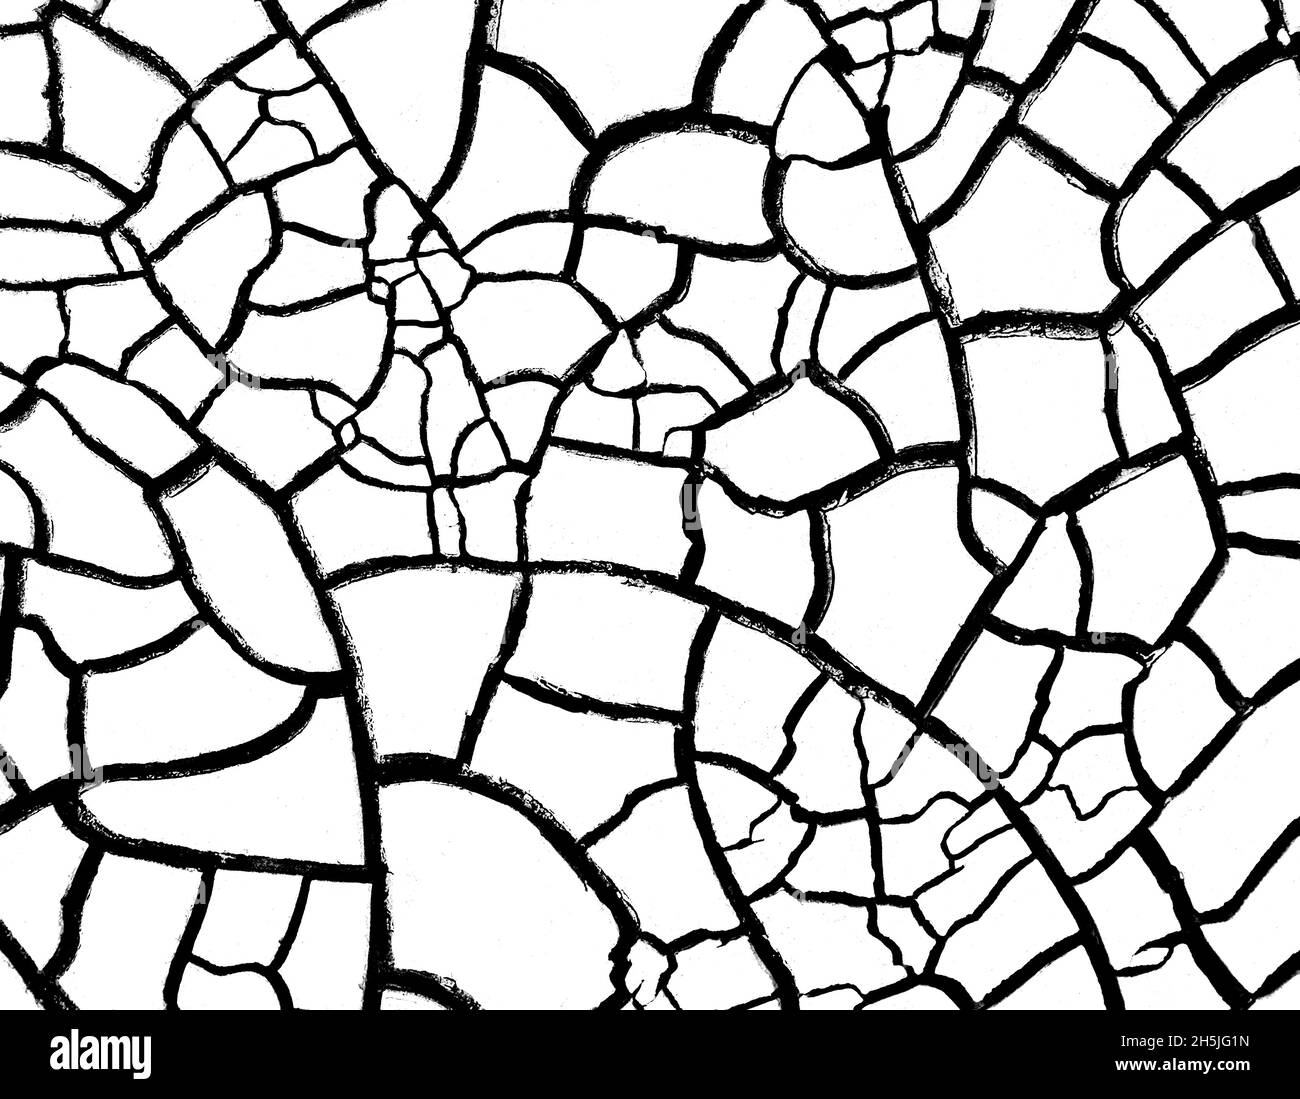 Tierra agrietada seca, superposición de textura en blanco y negro Foto de stock